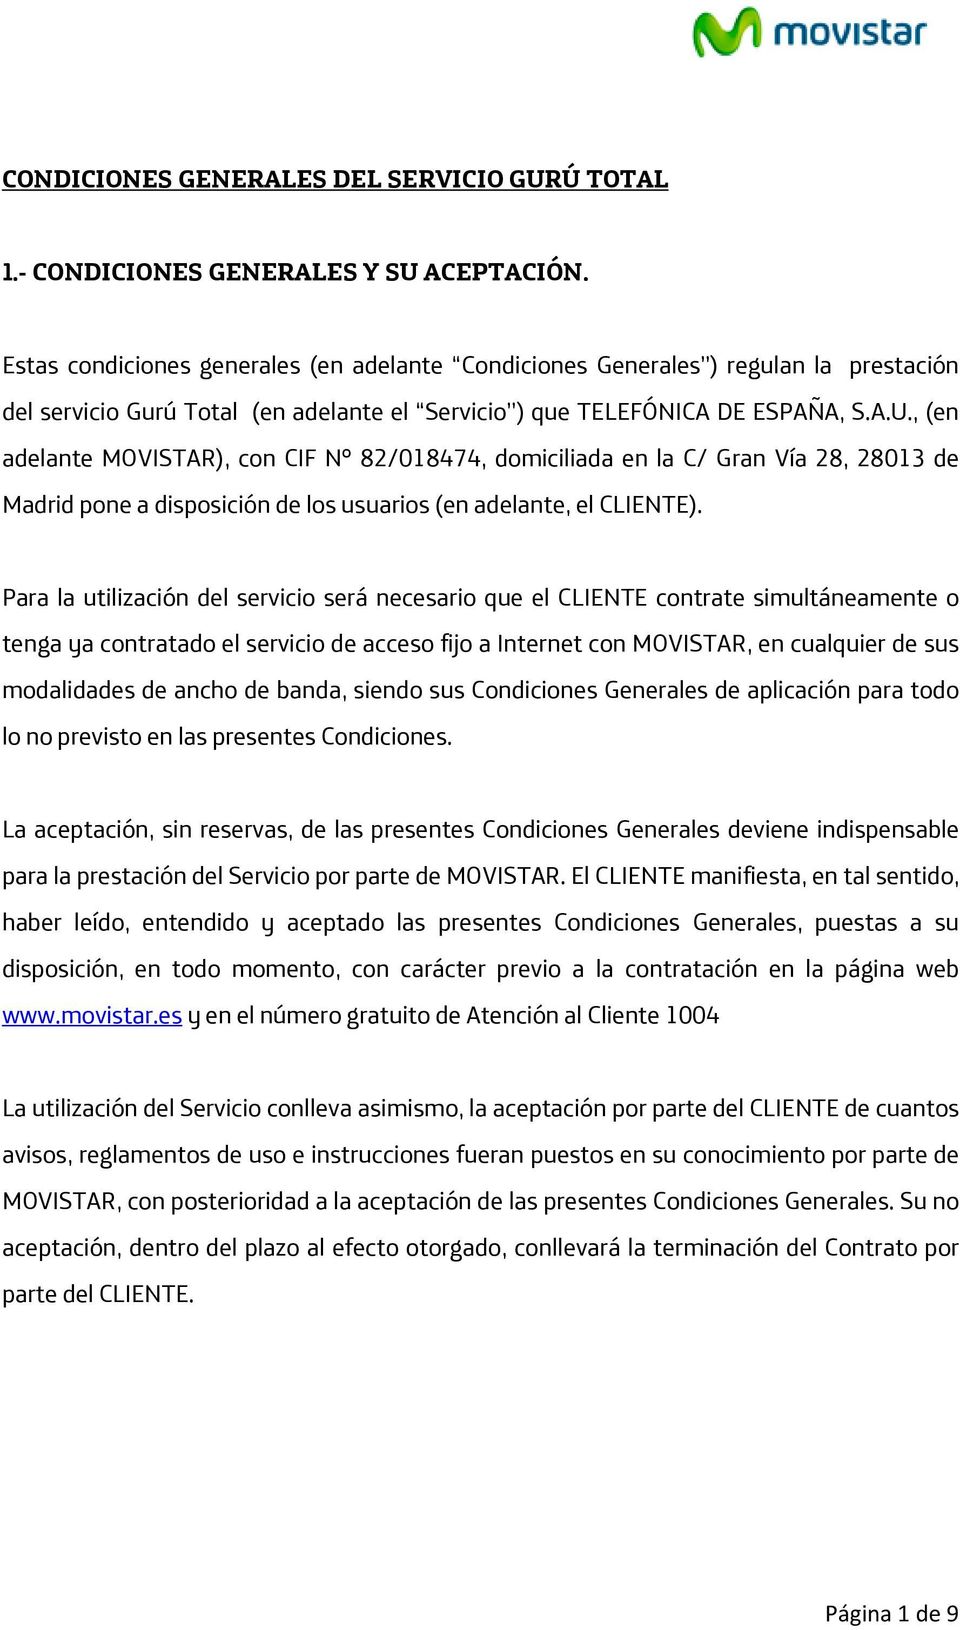 , (en adelante MOVISTAR), con CIF Nº 82/018474, domiciliada en la C/ Gran Vía 28, 28013 de Madrid pone a disposición de los usuarios (en adelante, el CLIENTE).